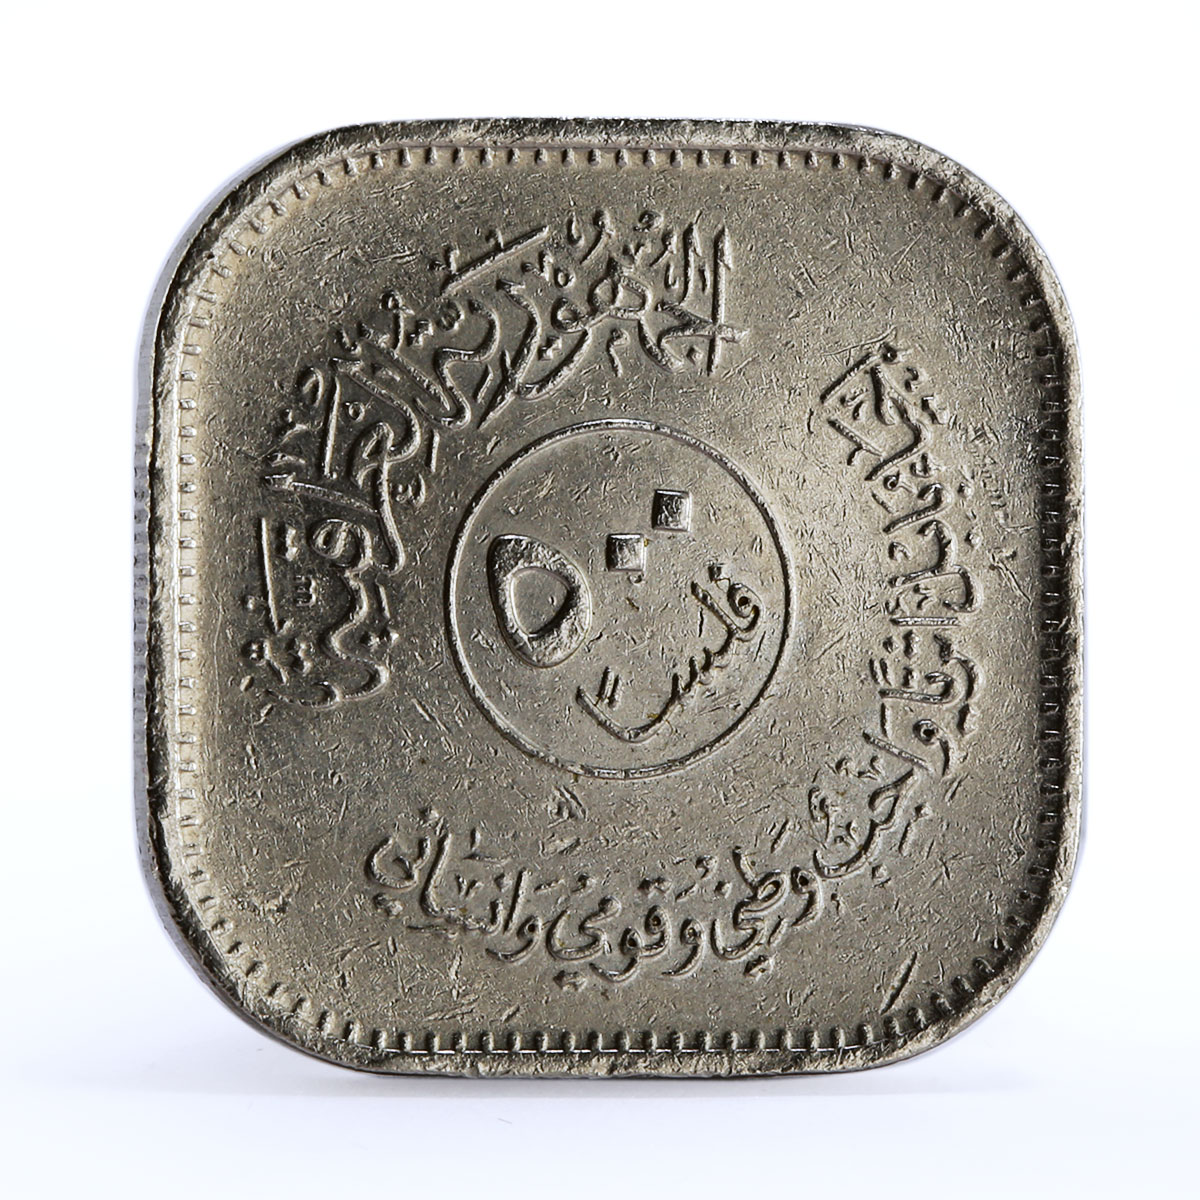 Iraq 500 fils Error Babylon Lion Sculpture nickel coin 1982